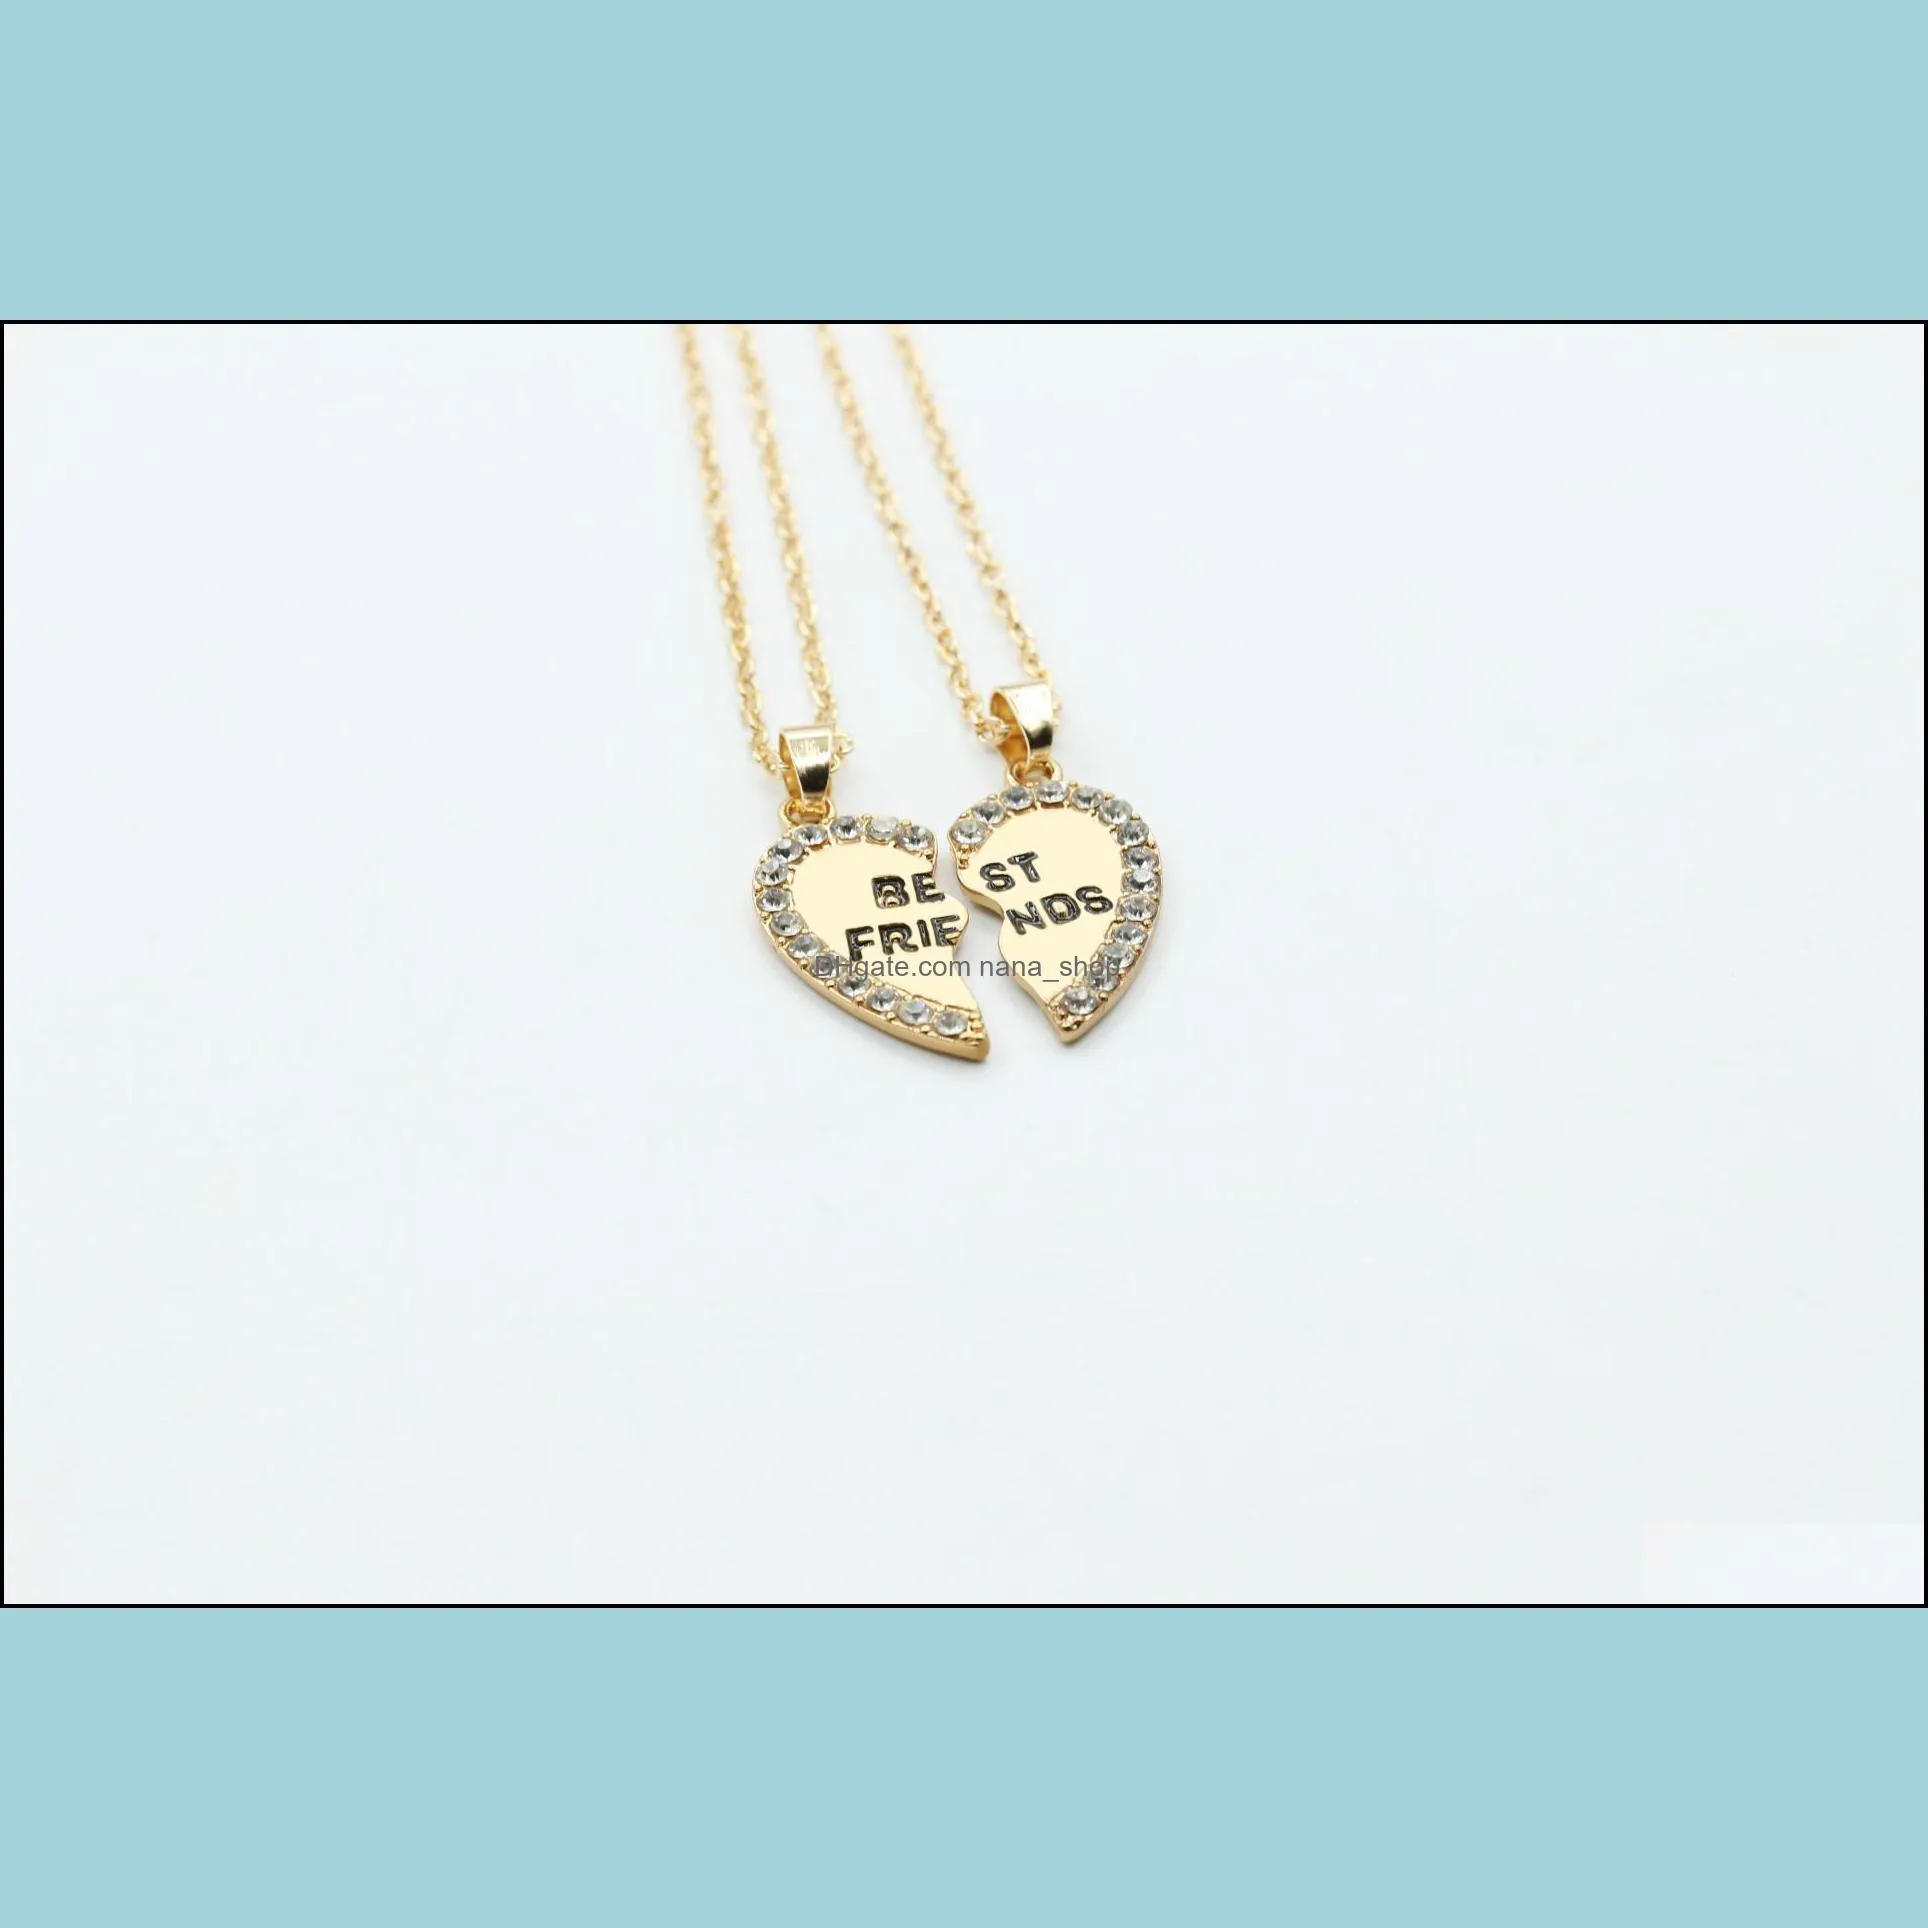 pendant necklace women men friend heart silver gold 2 pendants necklace bff friendship chain necklaces nanashop